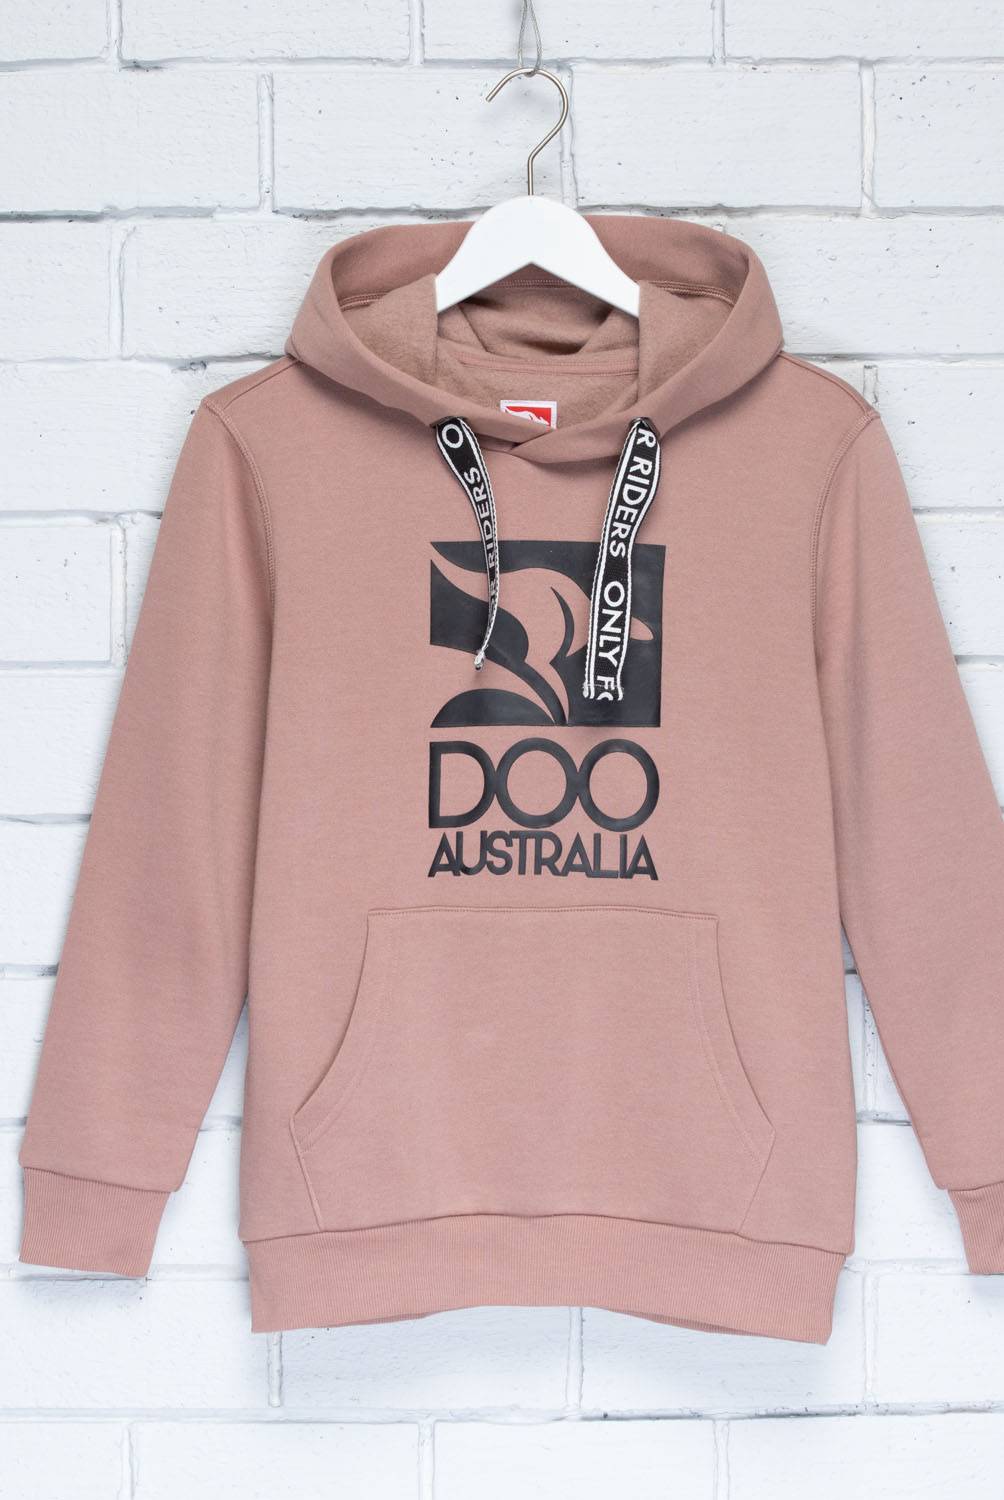 DOO AUSTRALIA - Polera con Capucha Algodón Niño Doo Australia